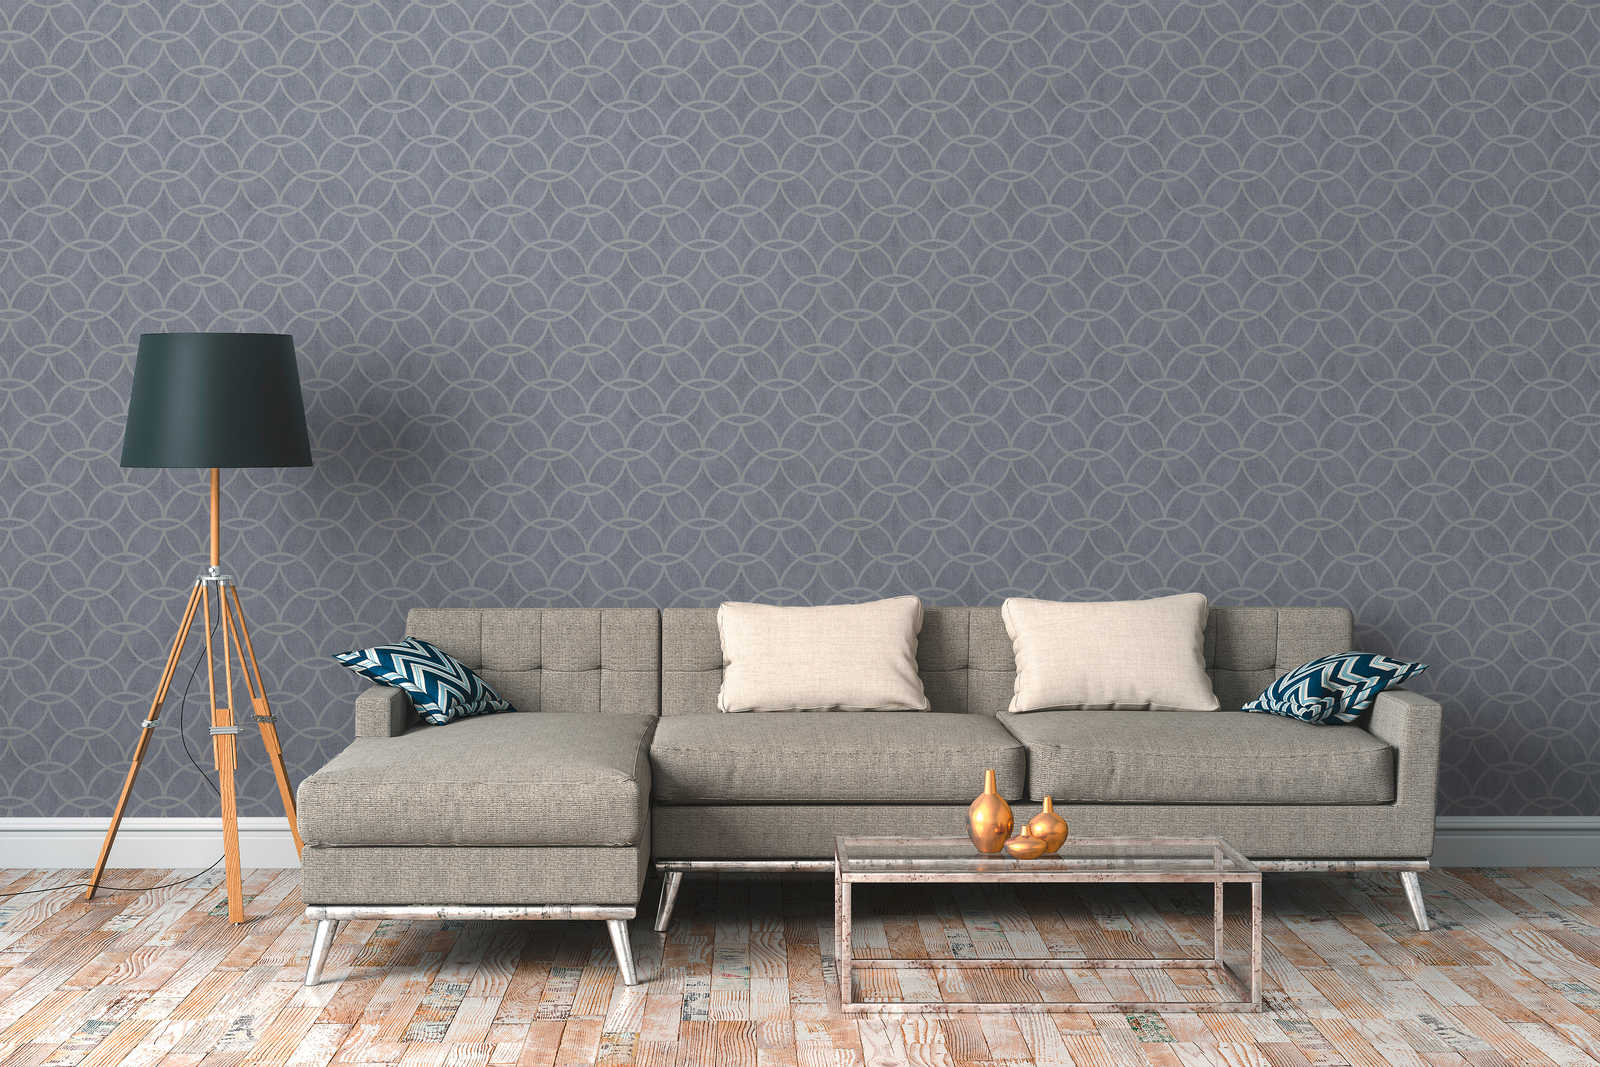             Mustertapete Vlies mit geometrischem Design & Schimmer-Effekt – Blau, Grau
        